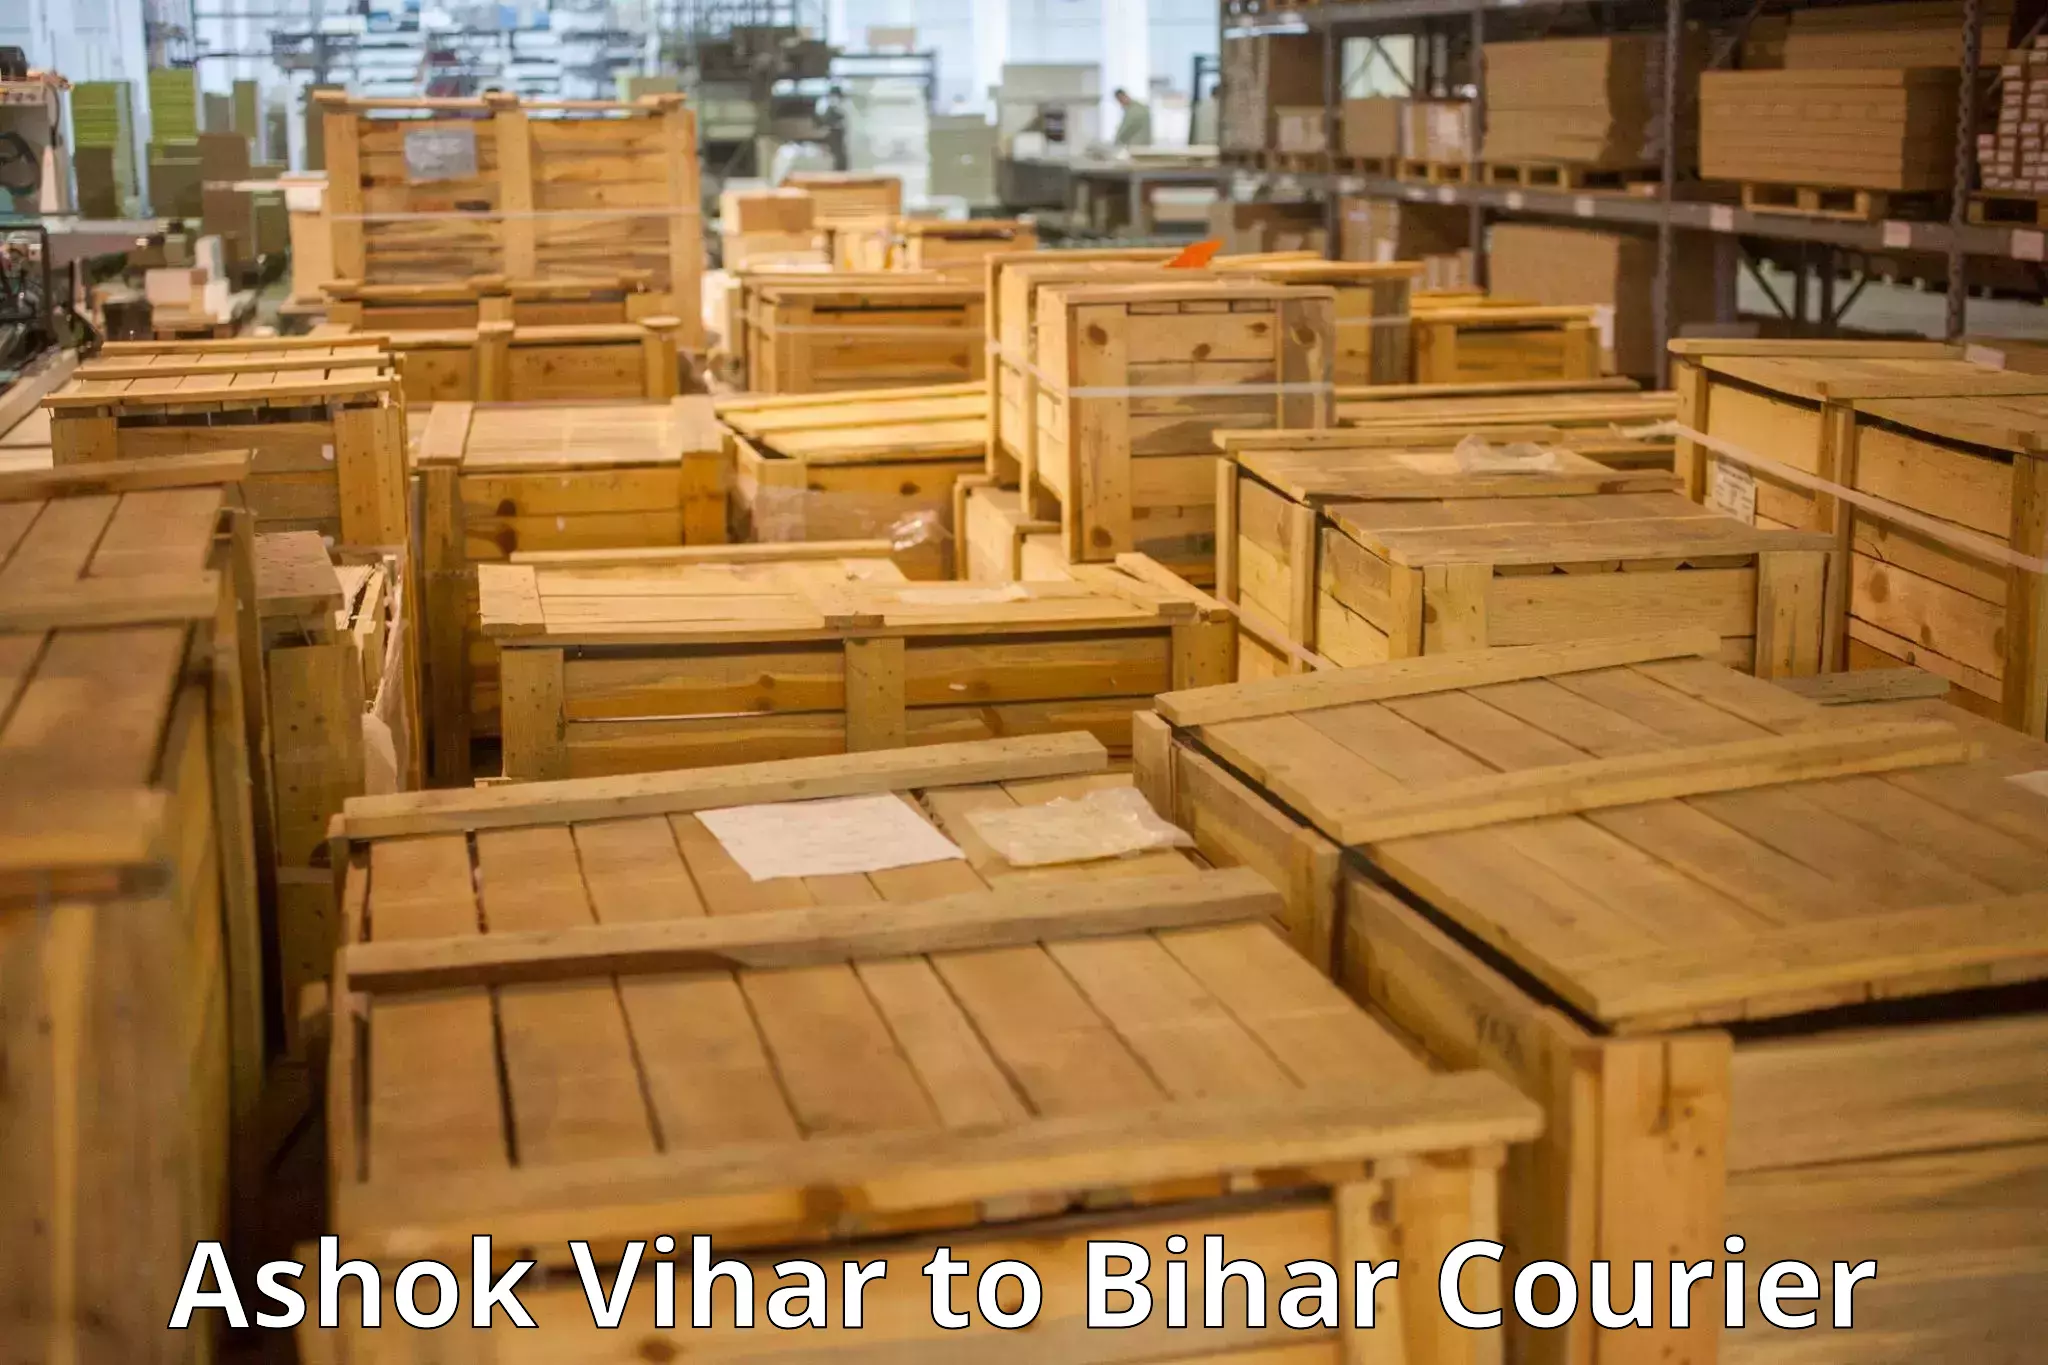 Luggage transport operations Ashok Vihar to Bhorey